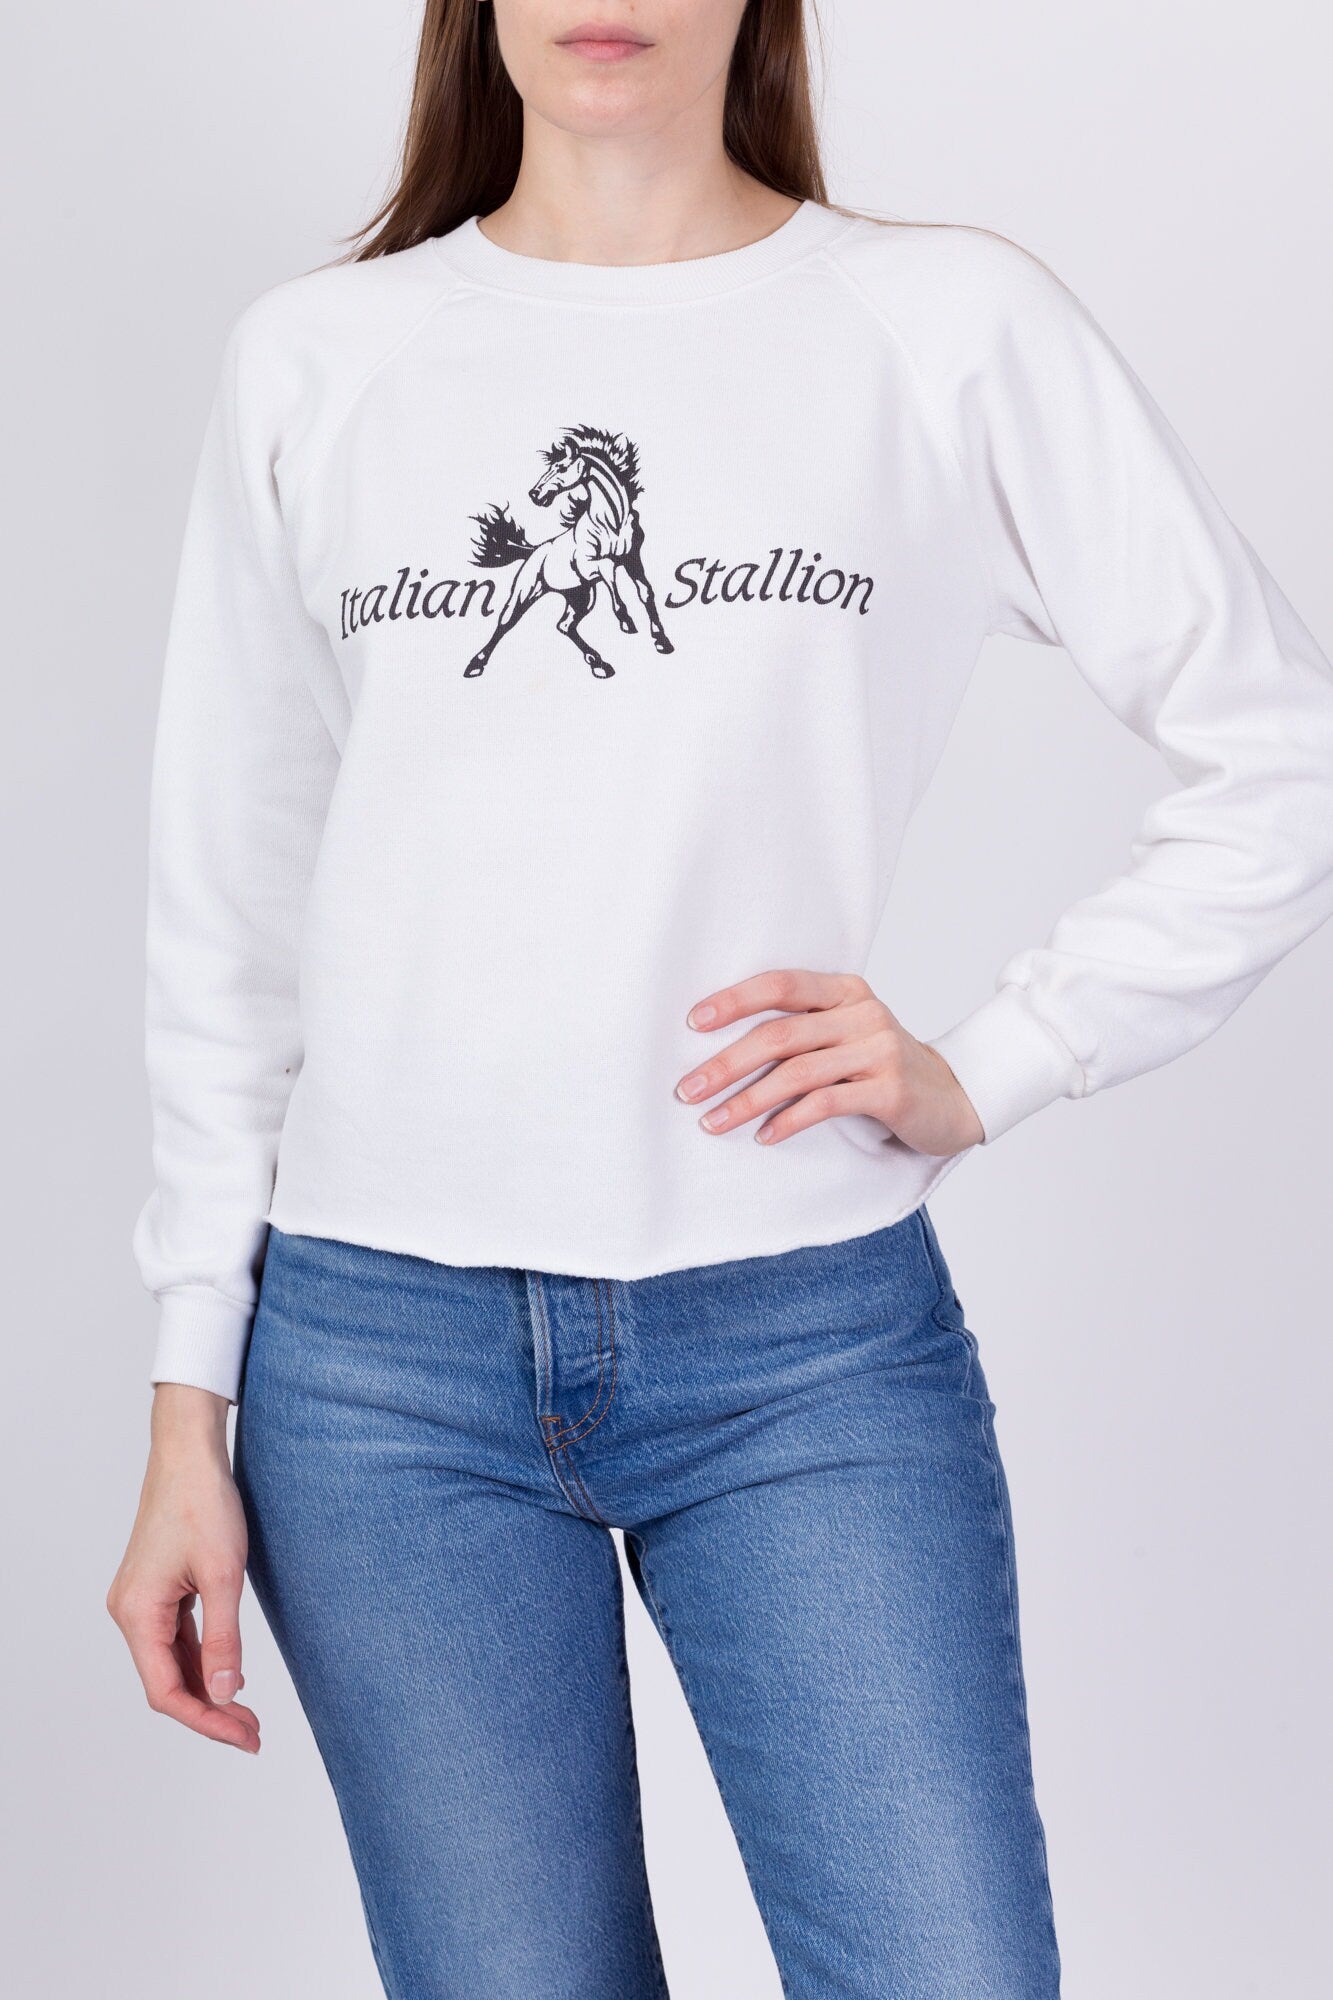 90s Italian Stallion Sweatshirt - Small to Medium 